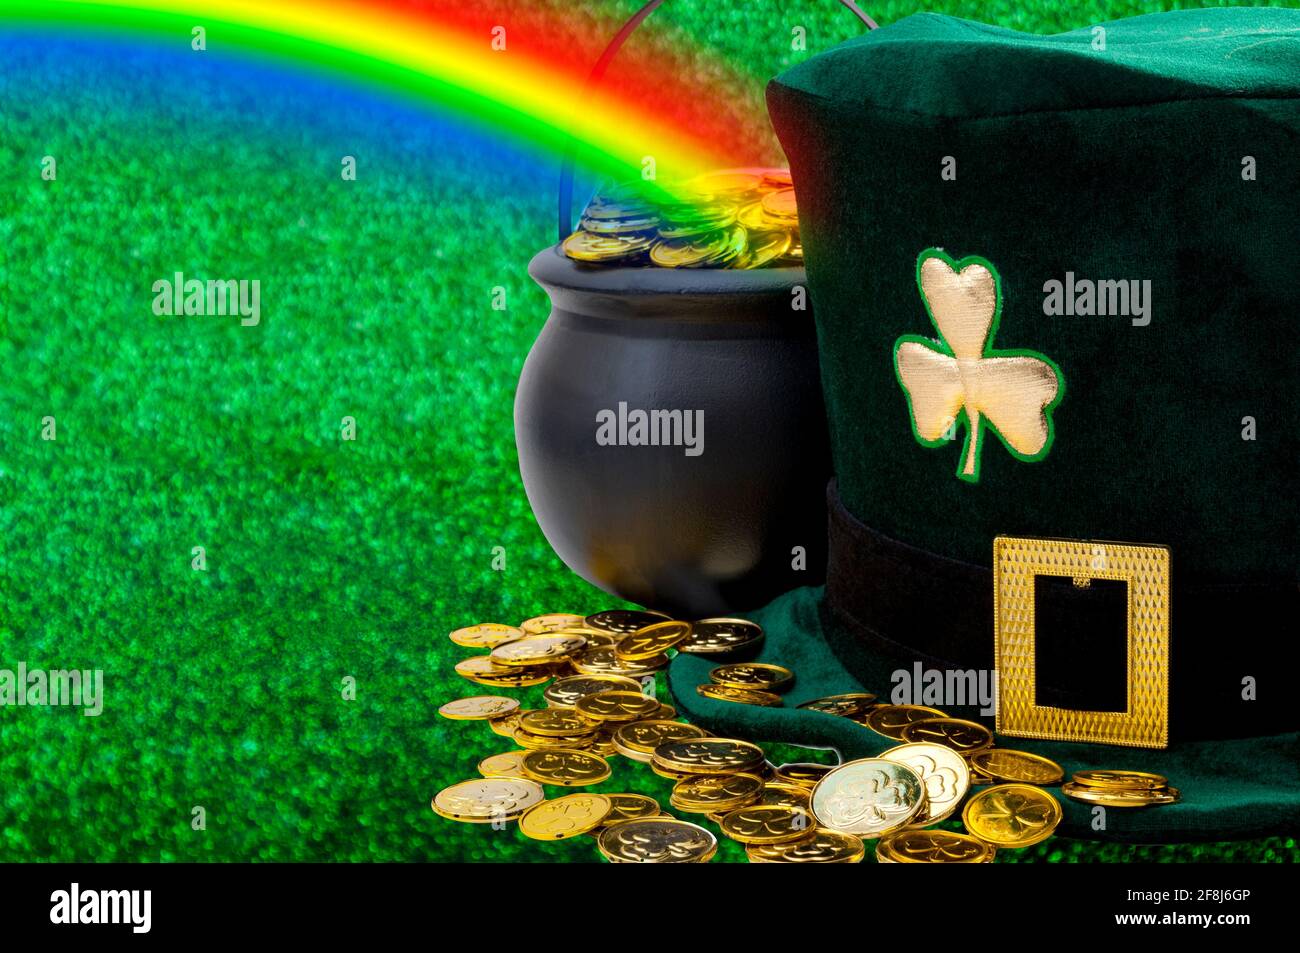 Meme de marzo y Happy St patrick's day concepto con verde gracioso leprechaun sombrero con shamrock, olla de oro al final del arco iris y el dorado disperso Foto de stock